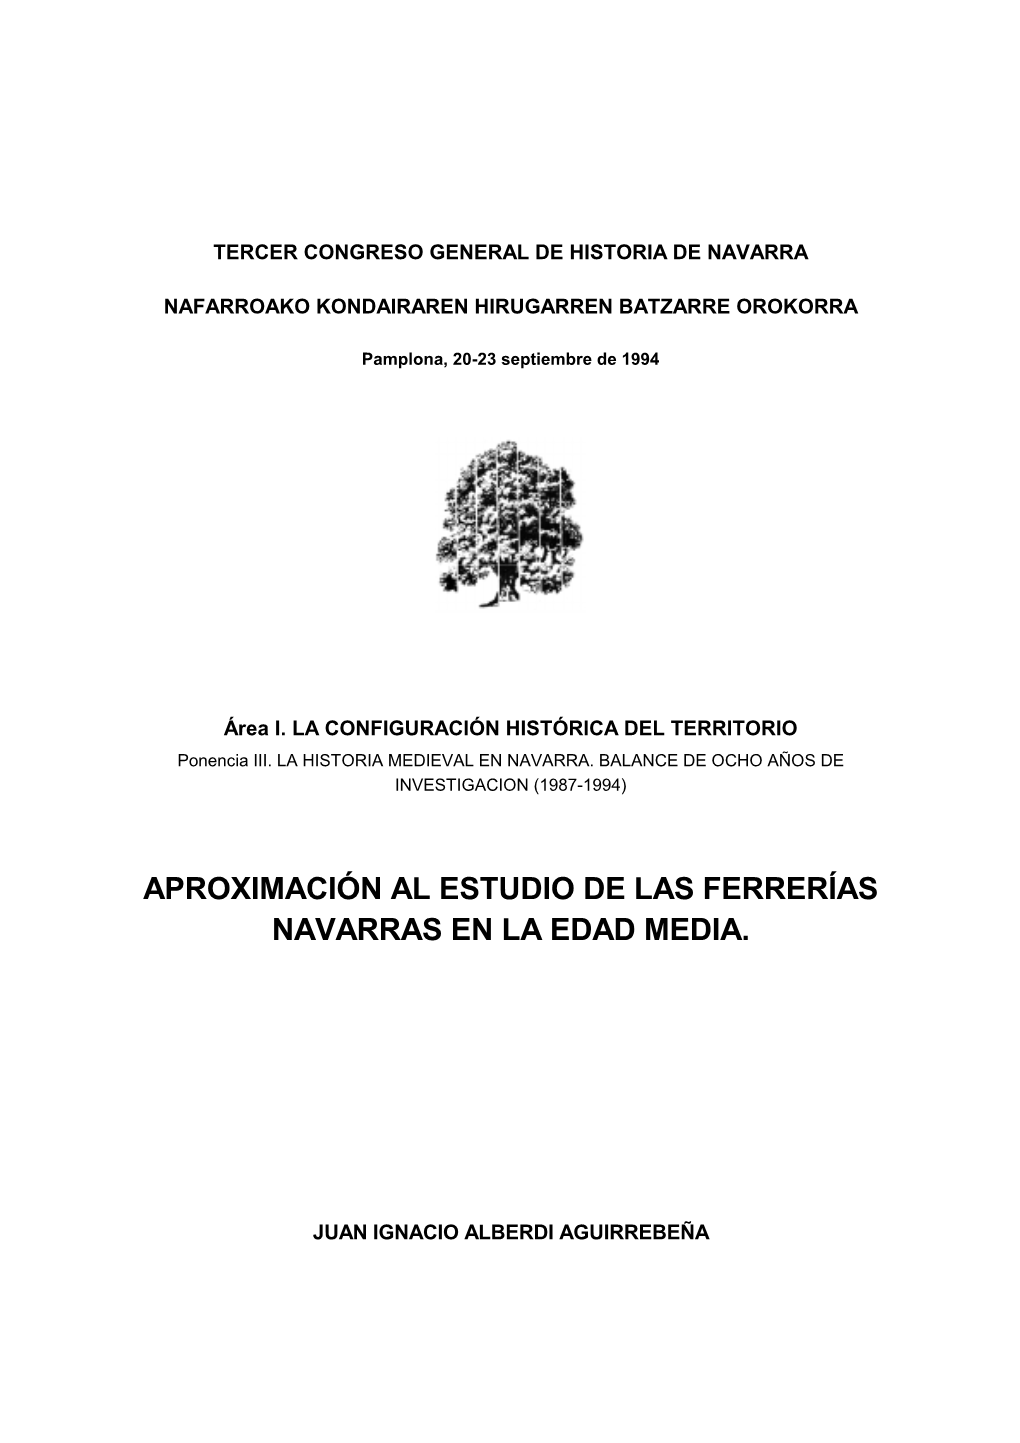 Aproximación Al Estudio De Las Ferrerías Navarras En La Edad Media